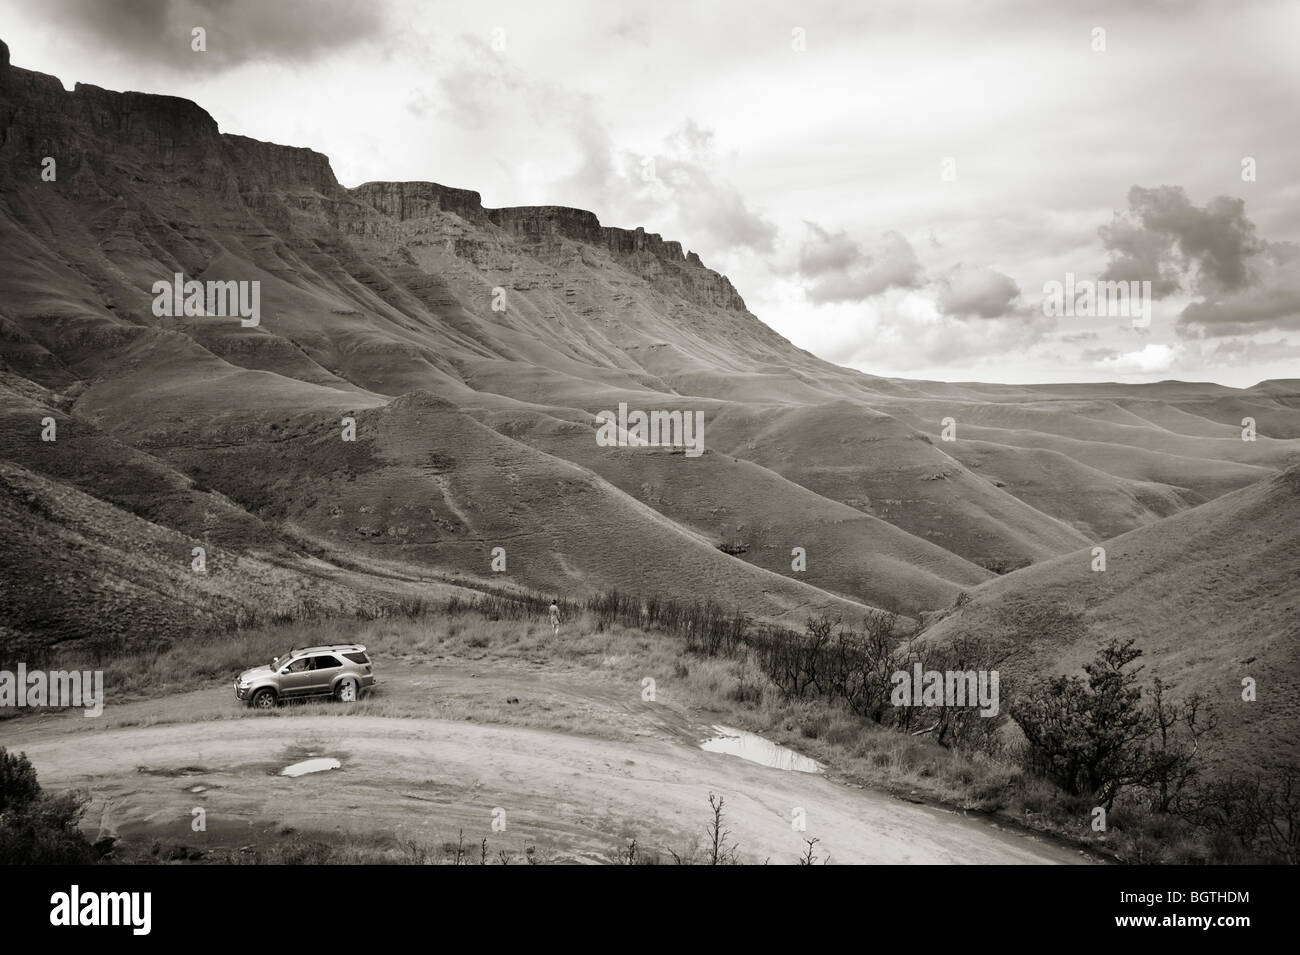 El Sani Pass, que va desde el sur de África a Lesotho, a través de las montañas Drakensburg. Sudáfrica - Lesotho Foto de stock